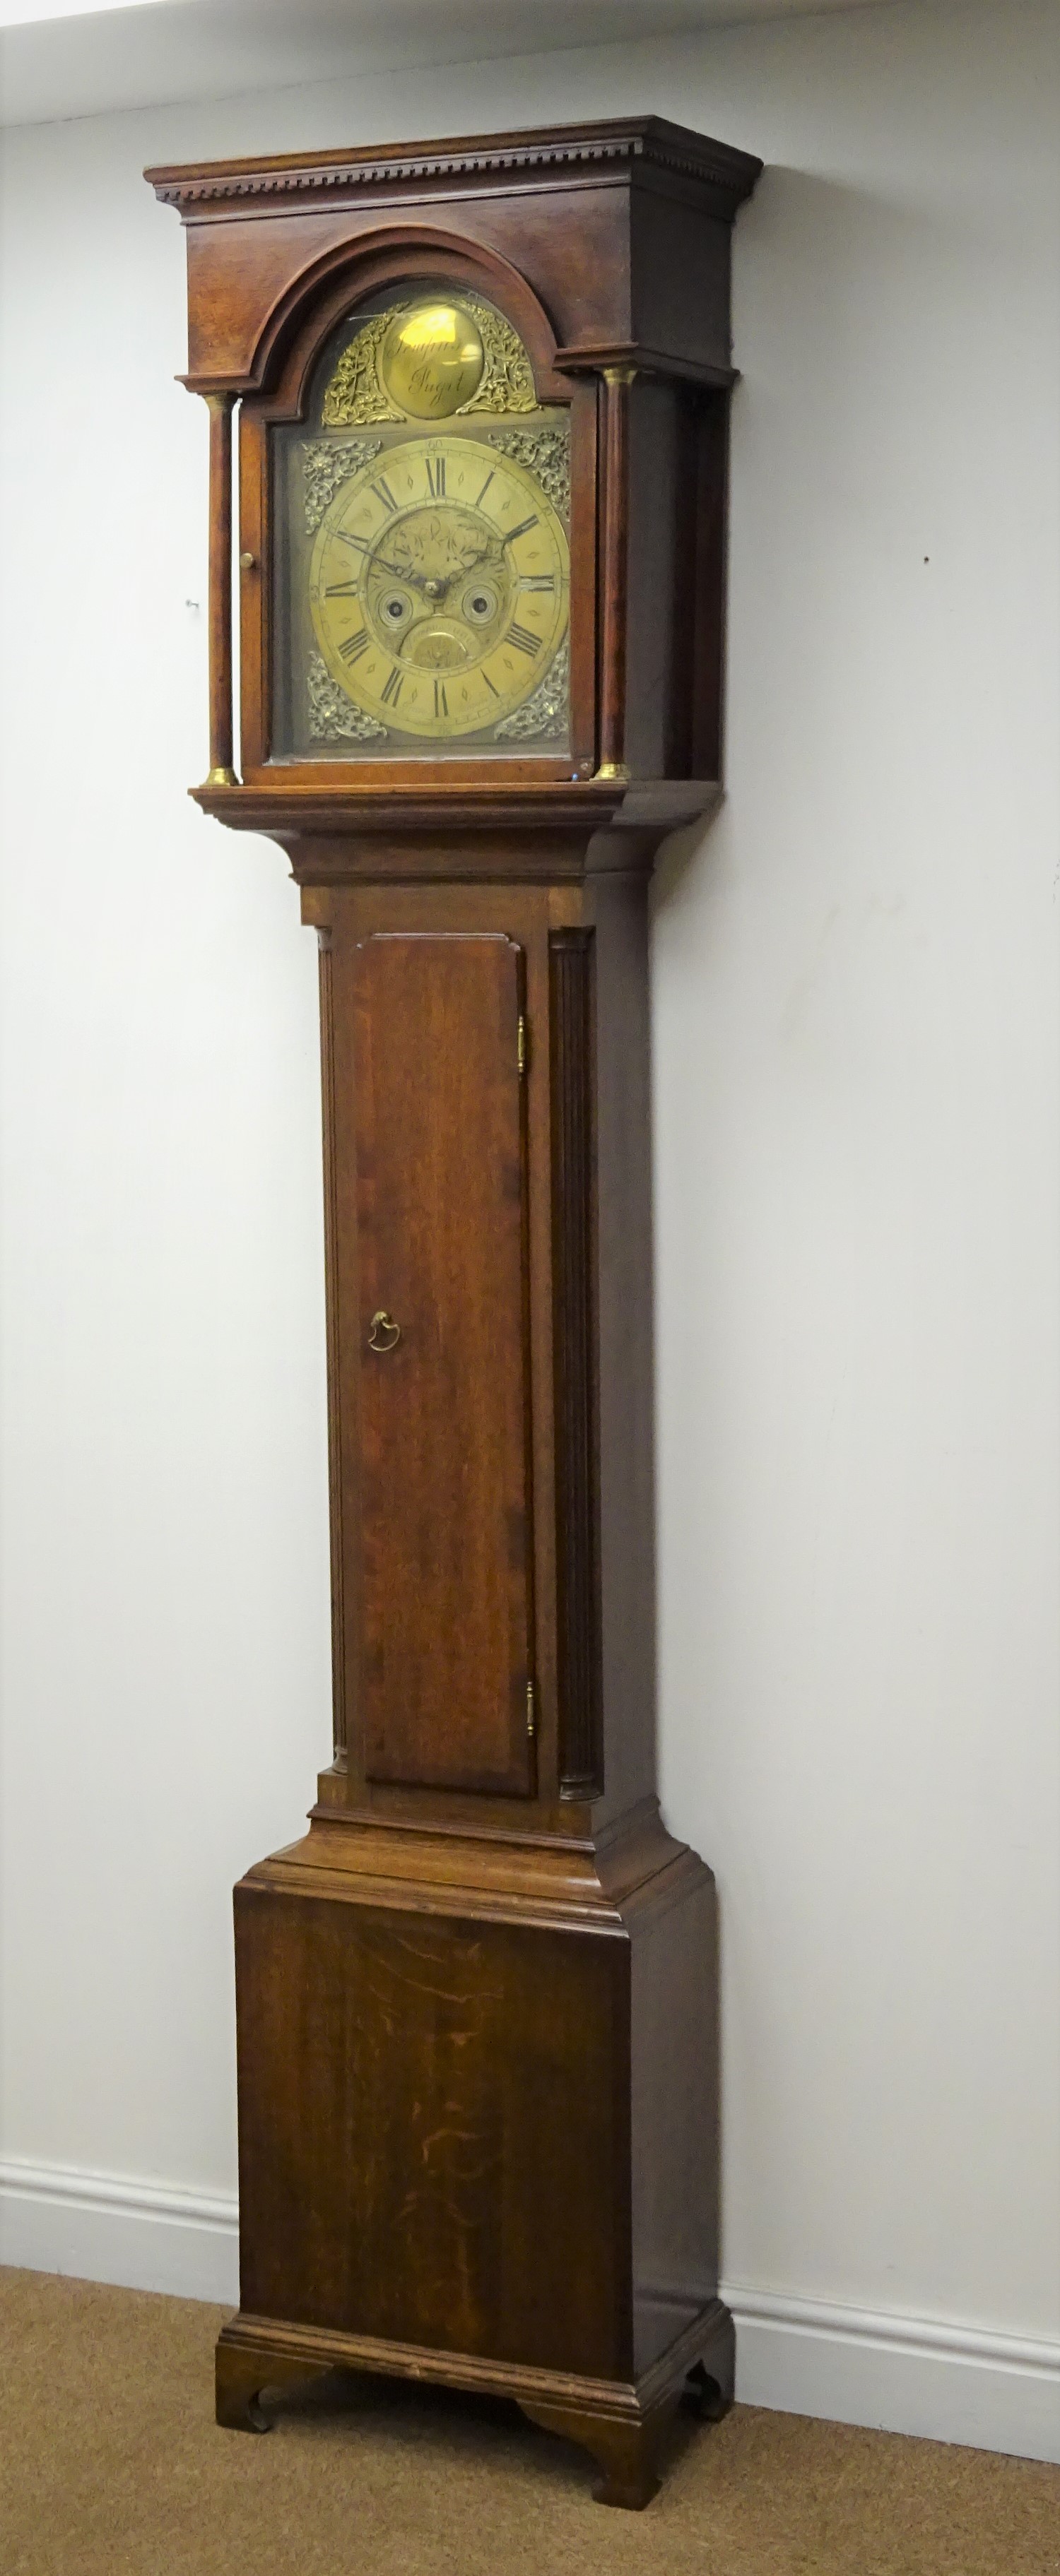 18th century oak longcase clock, 42.